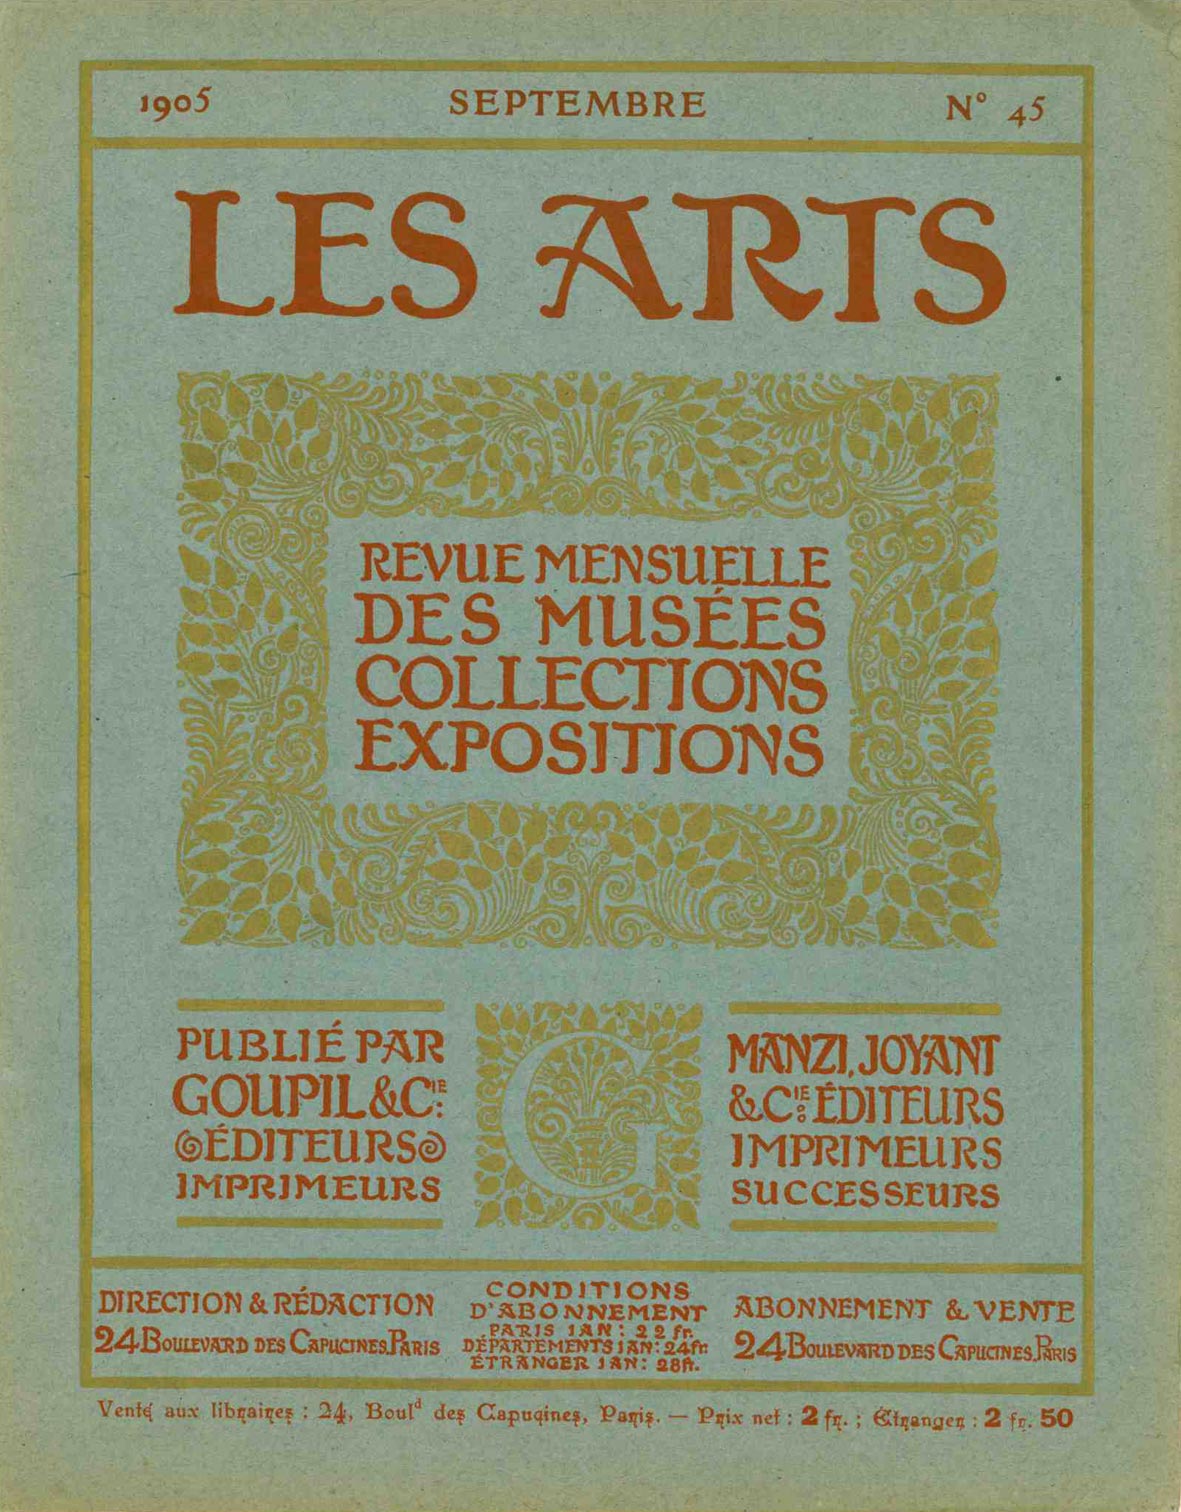 Couverture de la revue « Les Arts » - Collection Achille JUBINAL